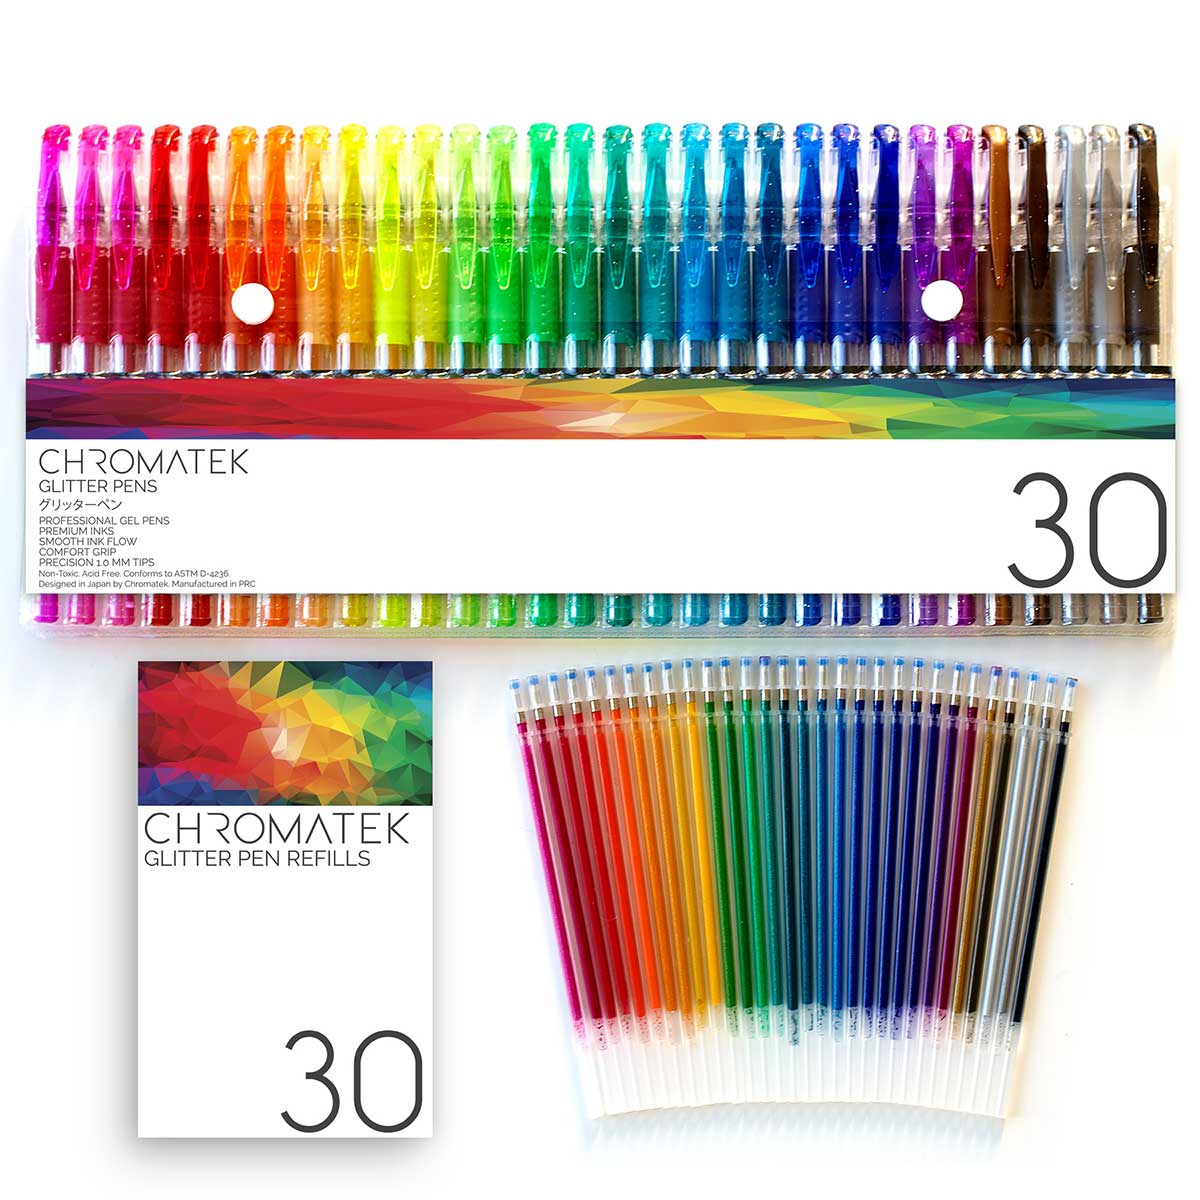 Swatching the 30 Chromatek Glitter Gel Pens